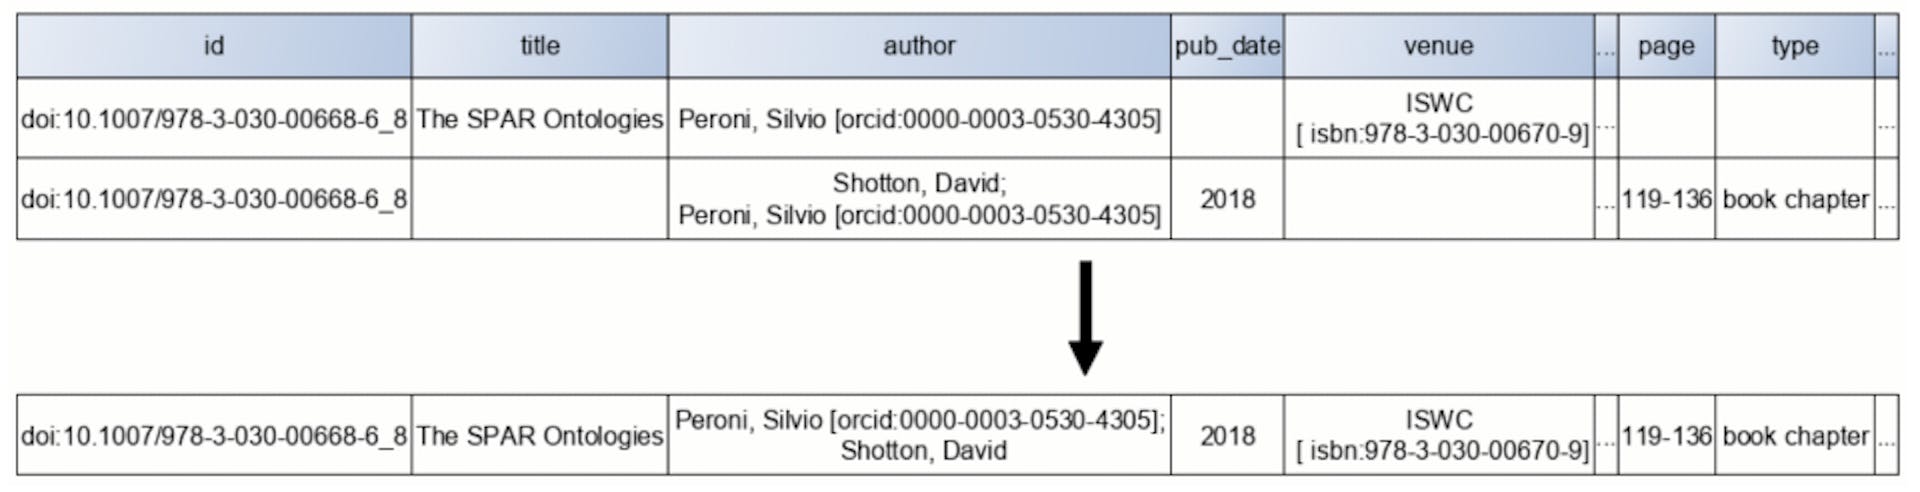 Şekil 4: Birleştirme sırasında bulunan ilk bilgi önceliklidir. Bu örnekte David Shotton, yazarlar listesinde Silvio Peroni'den sonra eklenmiştir çünkü Shotton ikinci durumda Peroni'den önce görünse bile Peroni zaten ilk yazar olarak kaydedilmiştir.